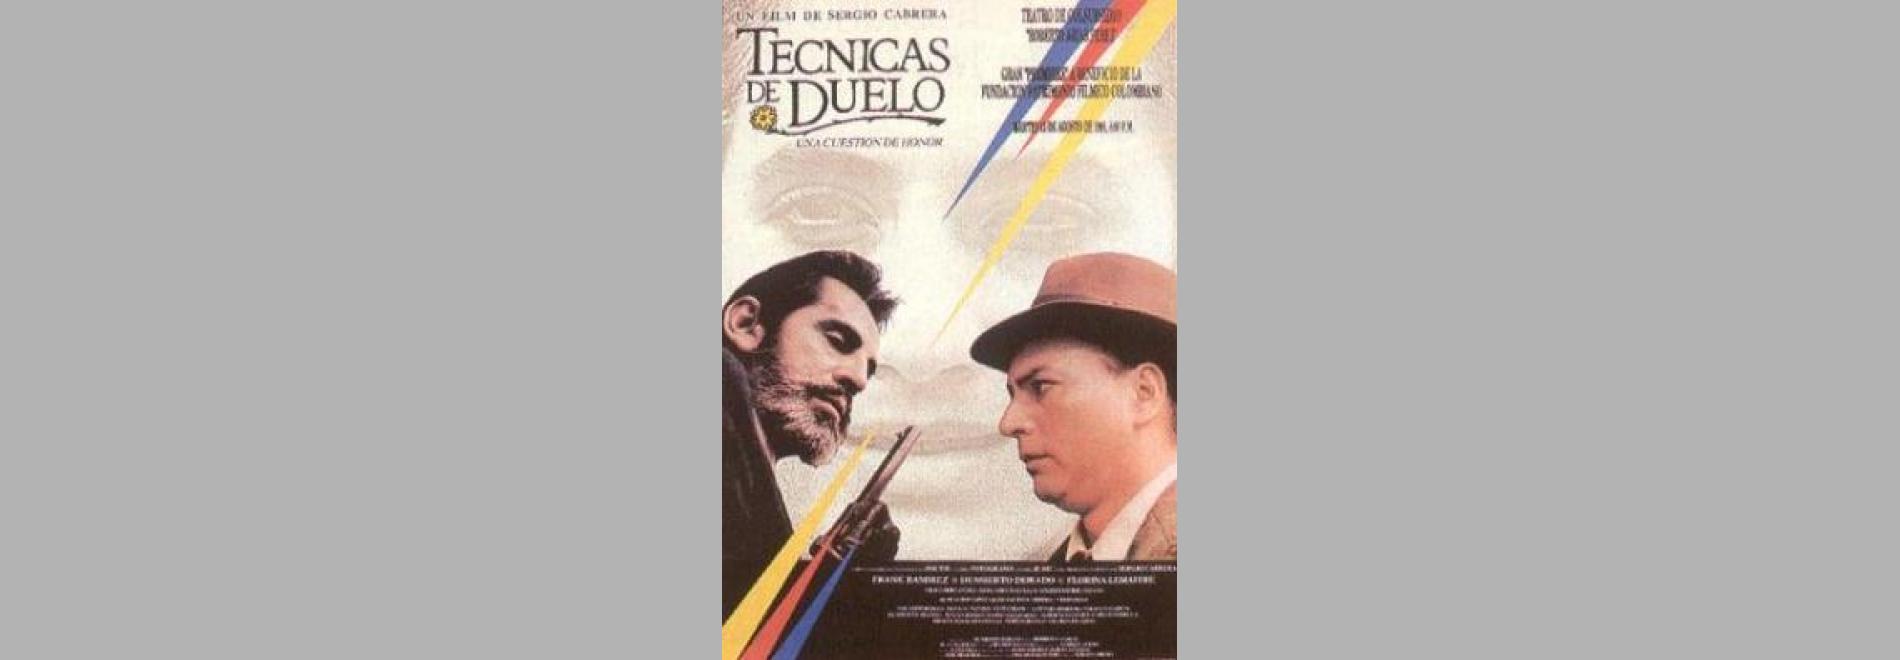 Técnicas de duelo: Una cuestión de honor (Sergio Cabrera, 1988)